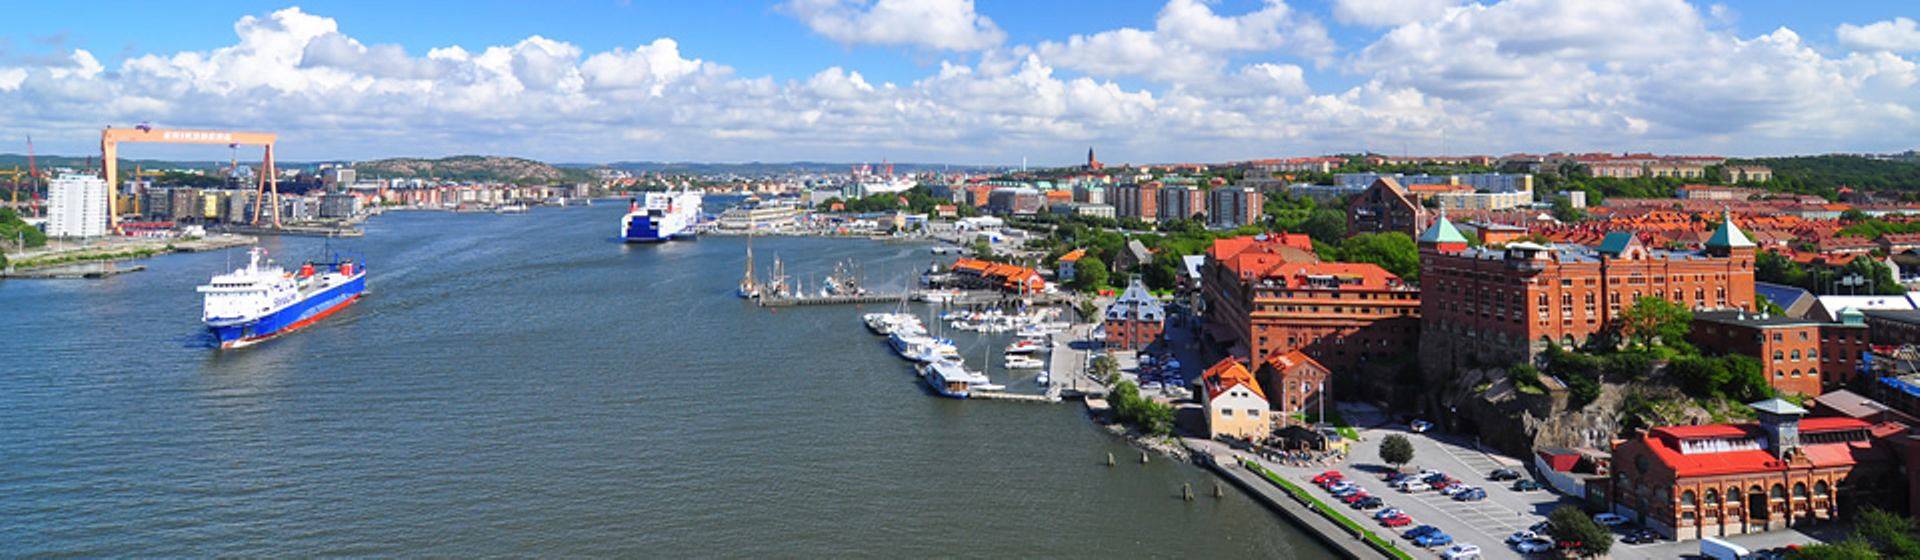 Holidays to Gothenburg Image